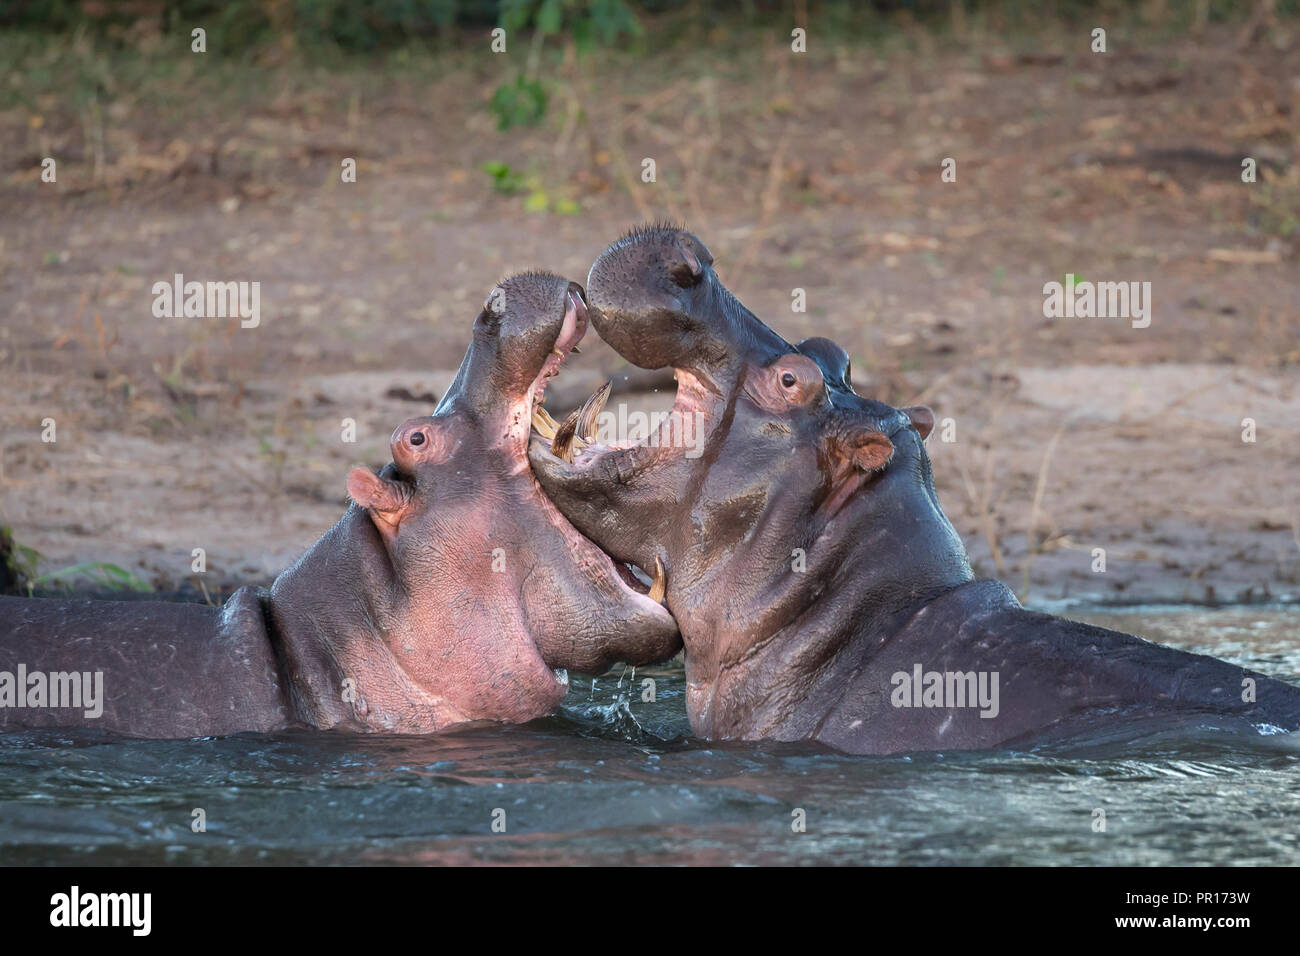 Los hipopótamos (Hippopotamus amphibius) playfighting, río Chobe, Botswana, África Foto de stock